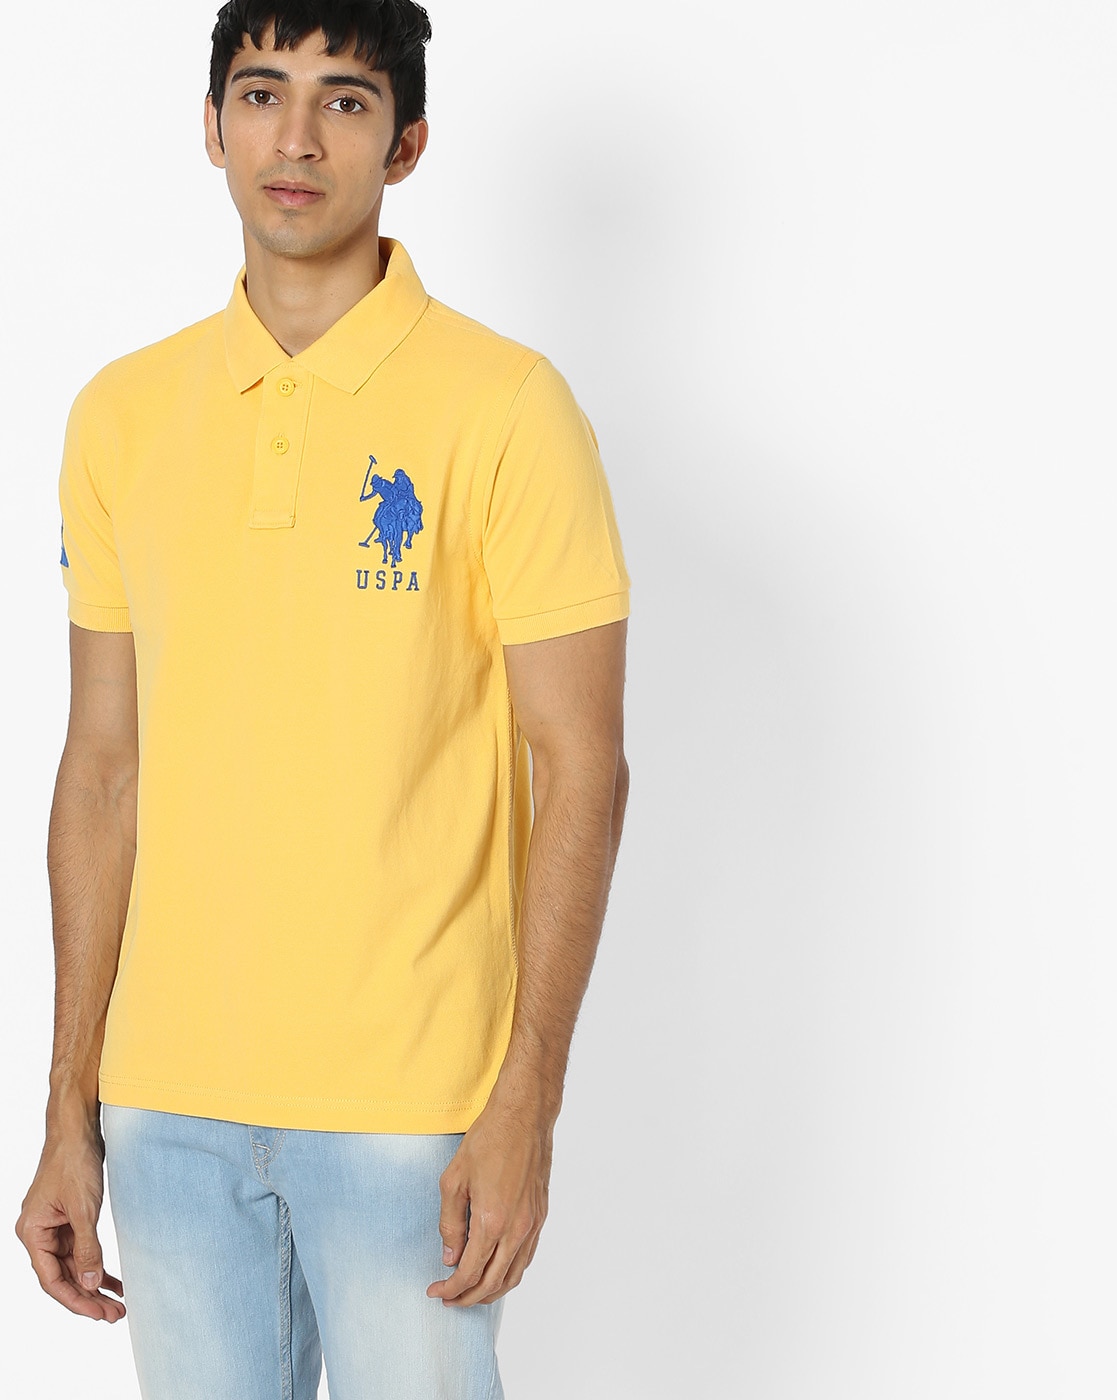 yellow polo tee shirt